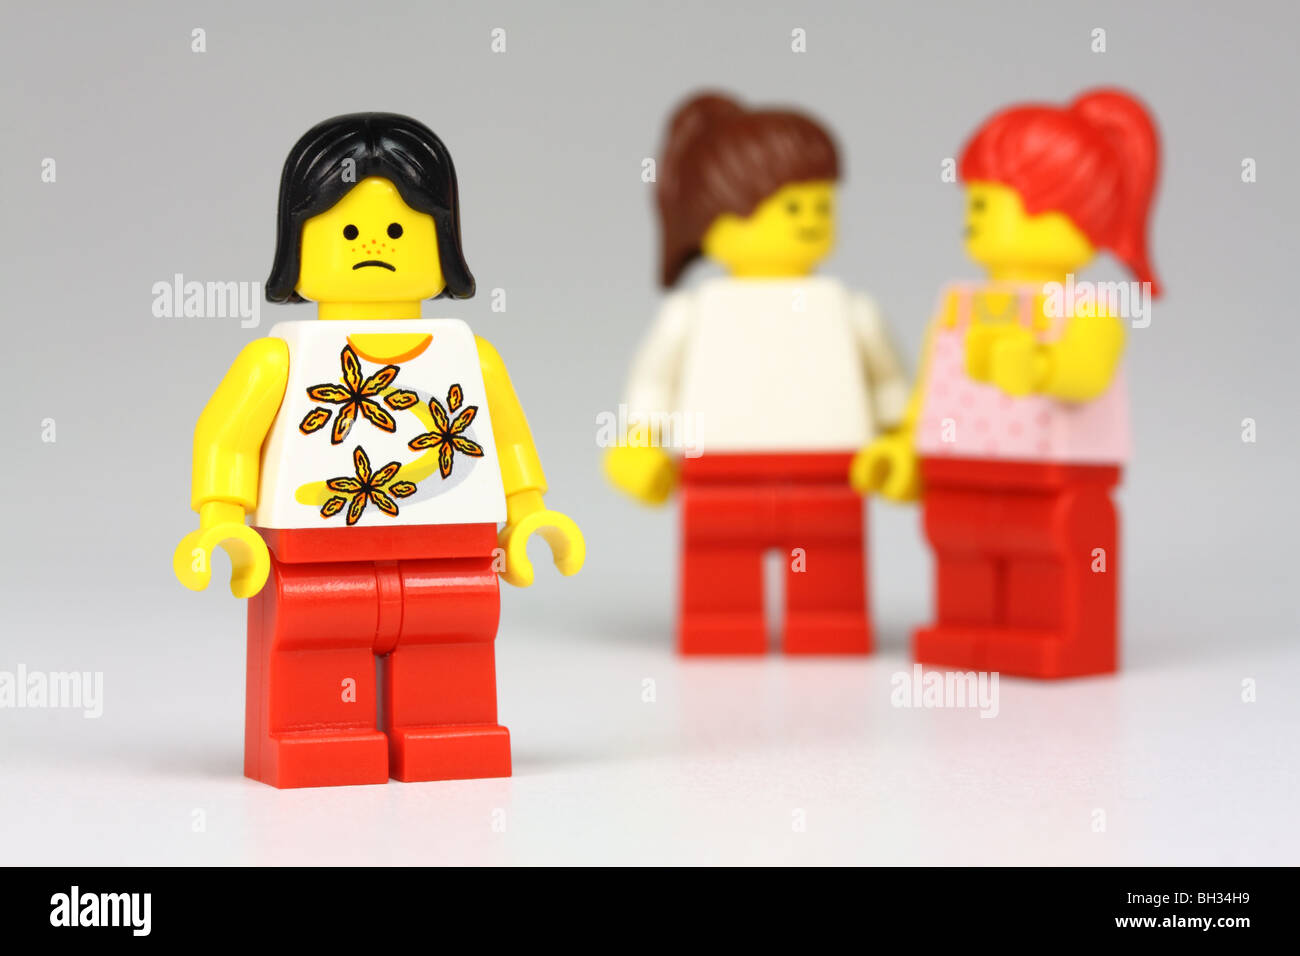 Infeliz chica lego, Lego con otras 2 chicas hablando de ella detrás de su espalda : aislamiento/bullying concepto Foto de stock